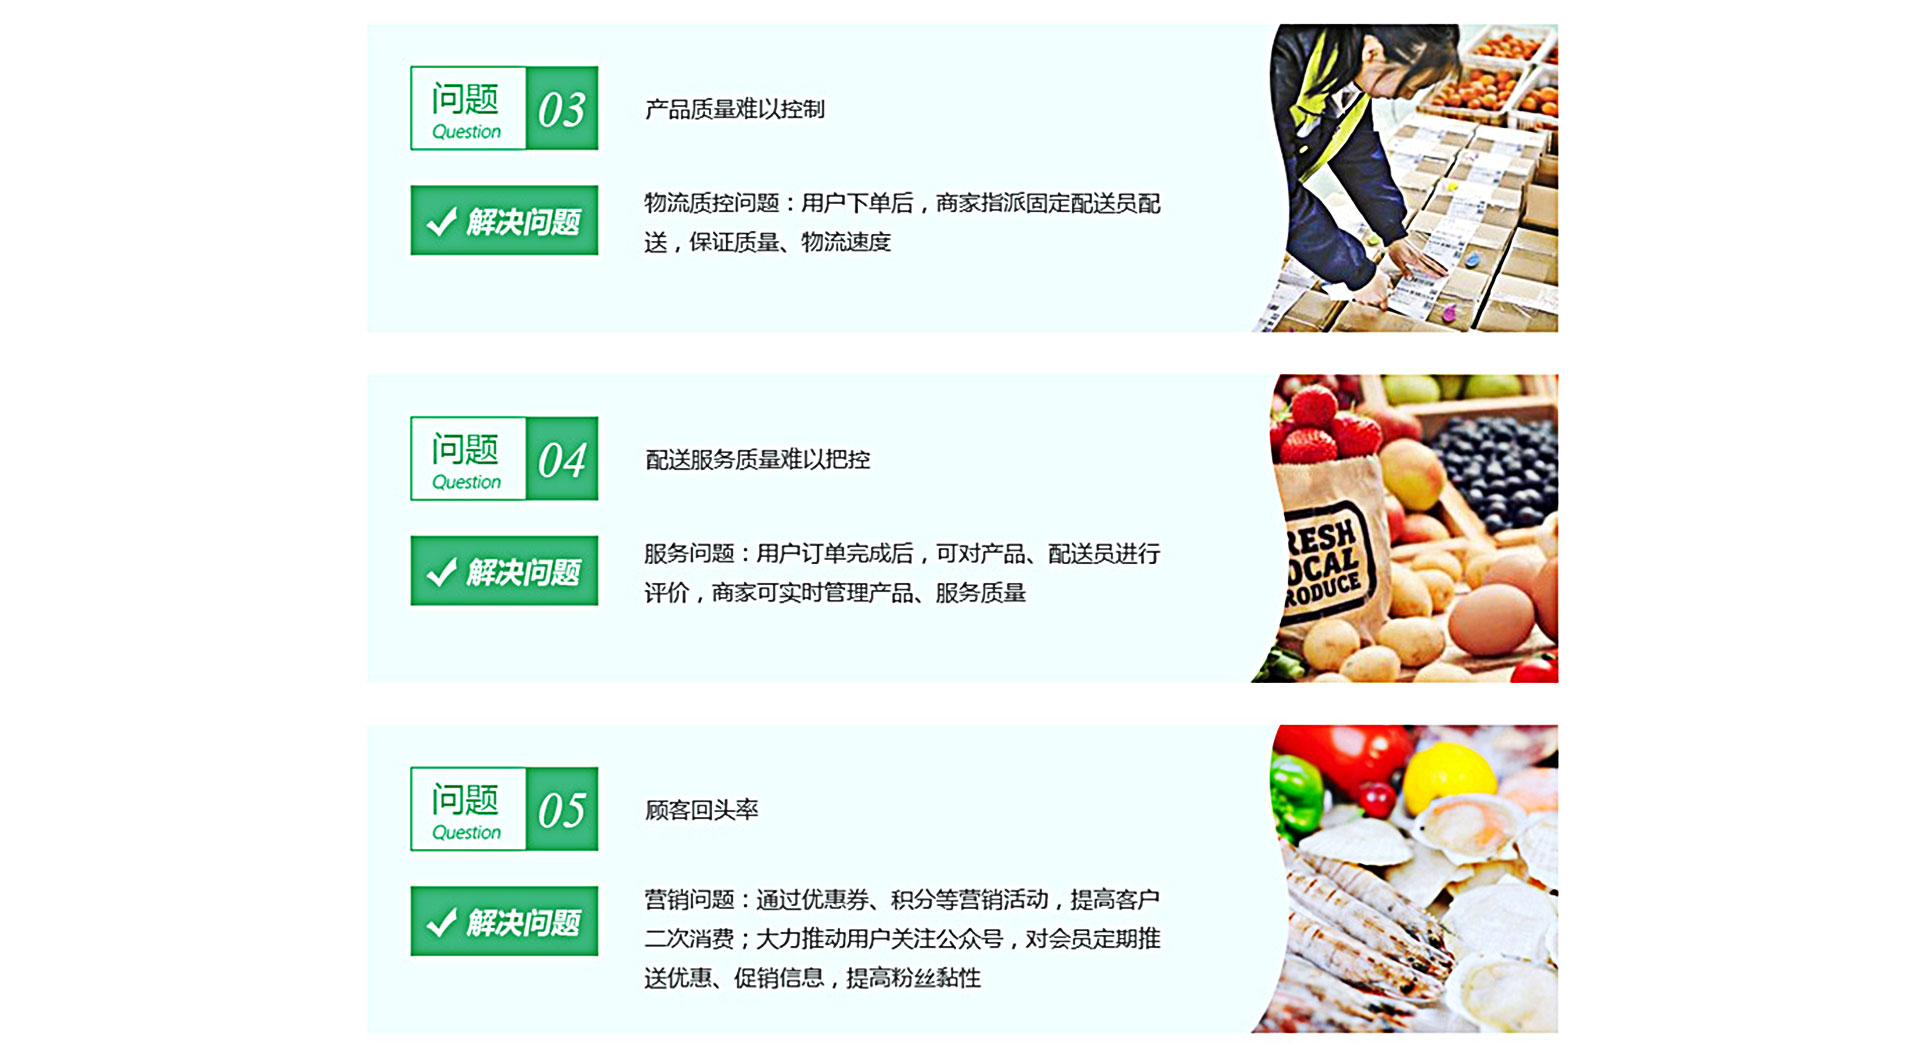 水果生鲜版小程序,上海小程序开发,微信小程序,小程序服务商,免费微信小程序